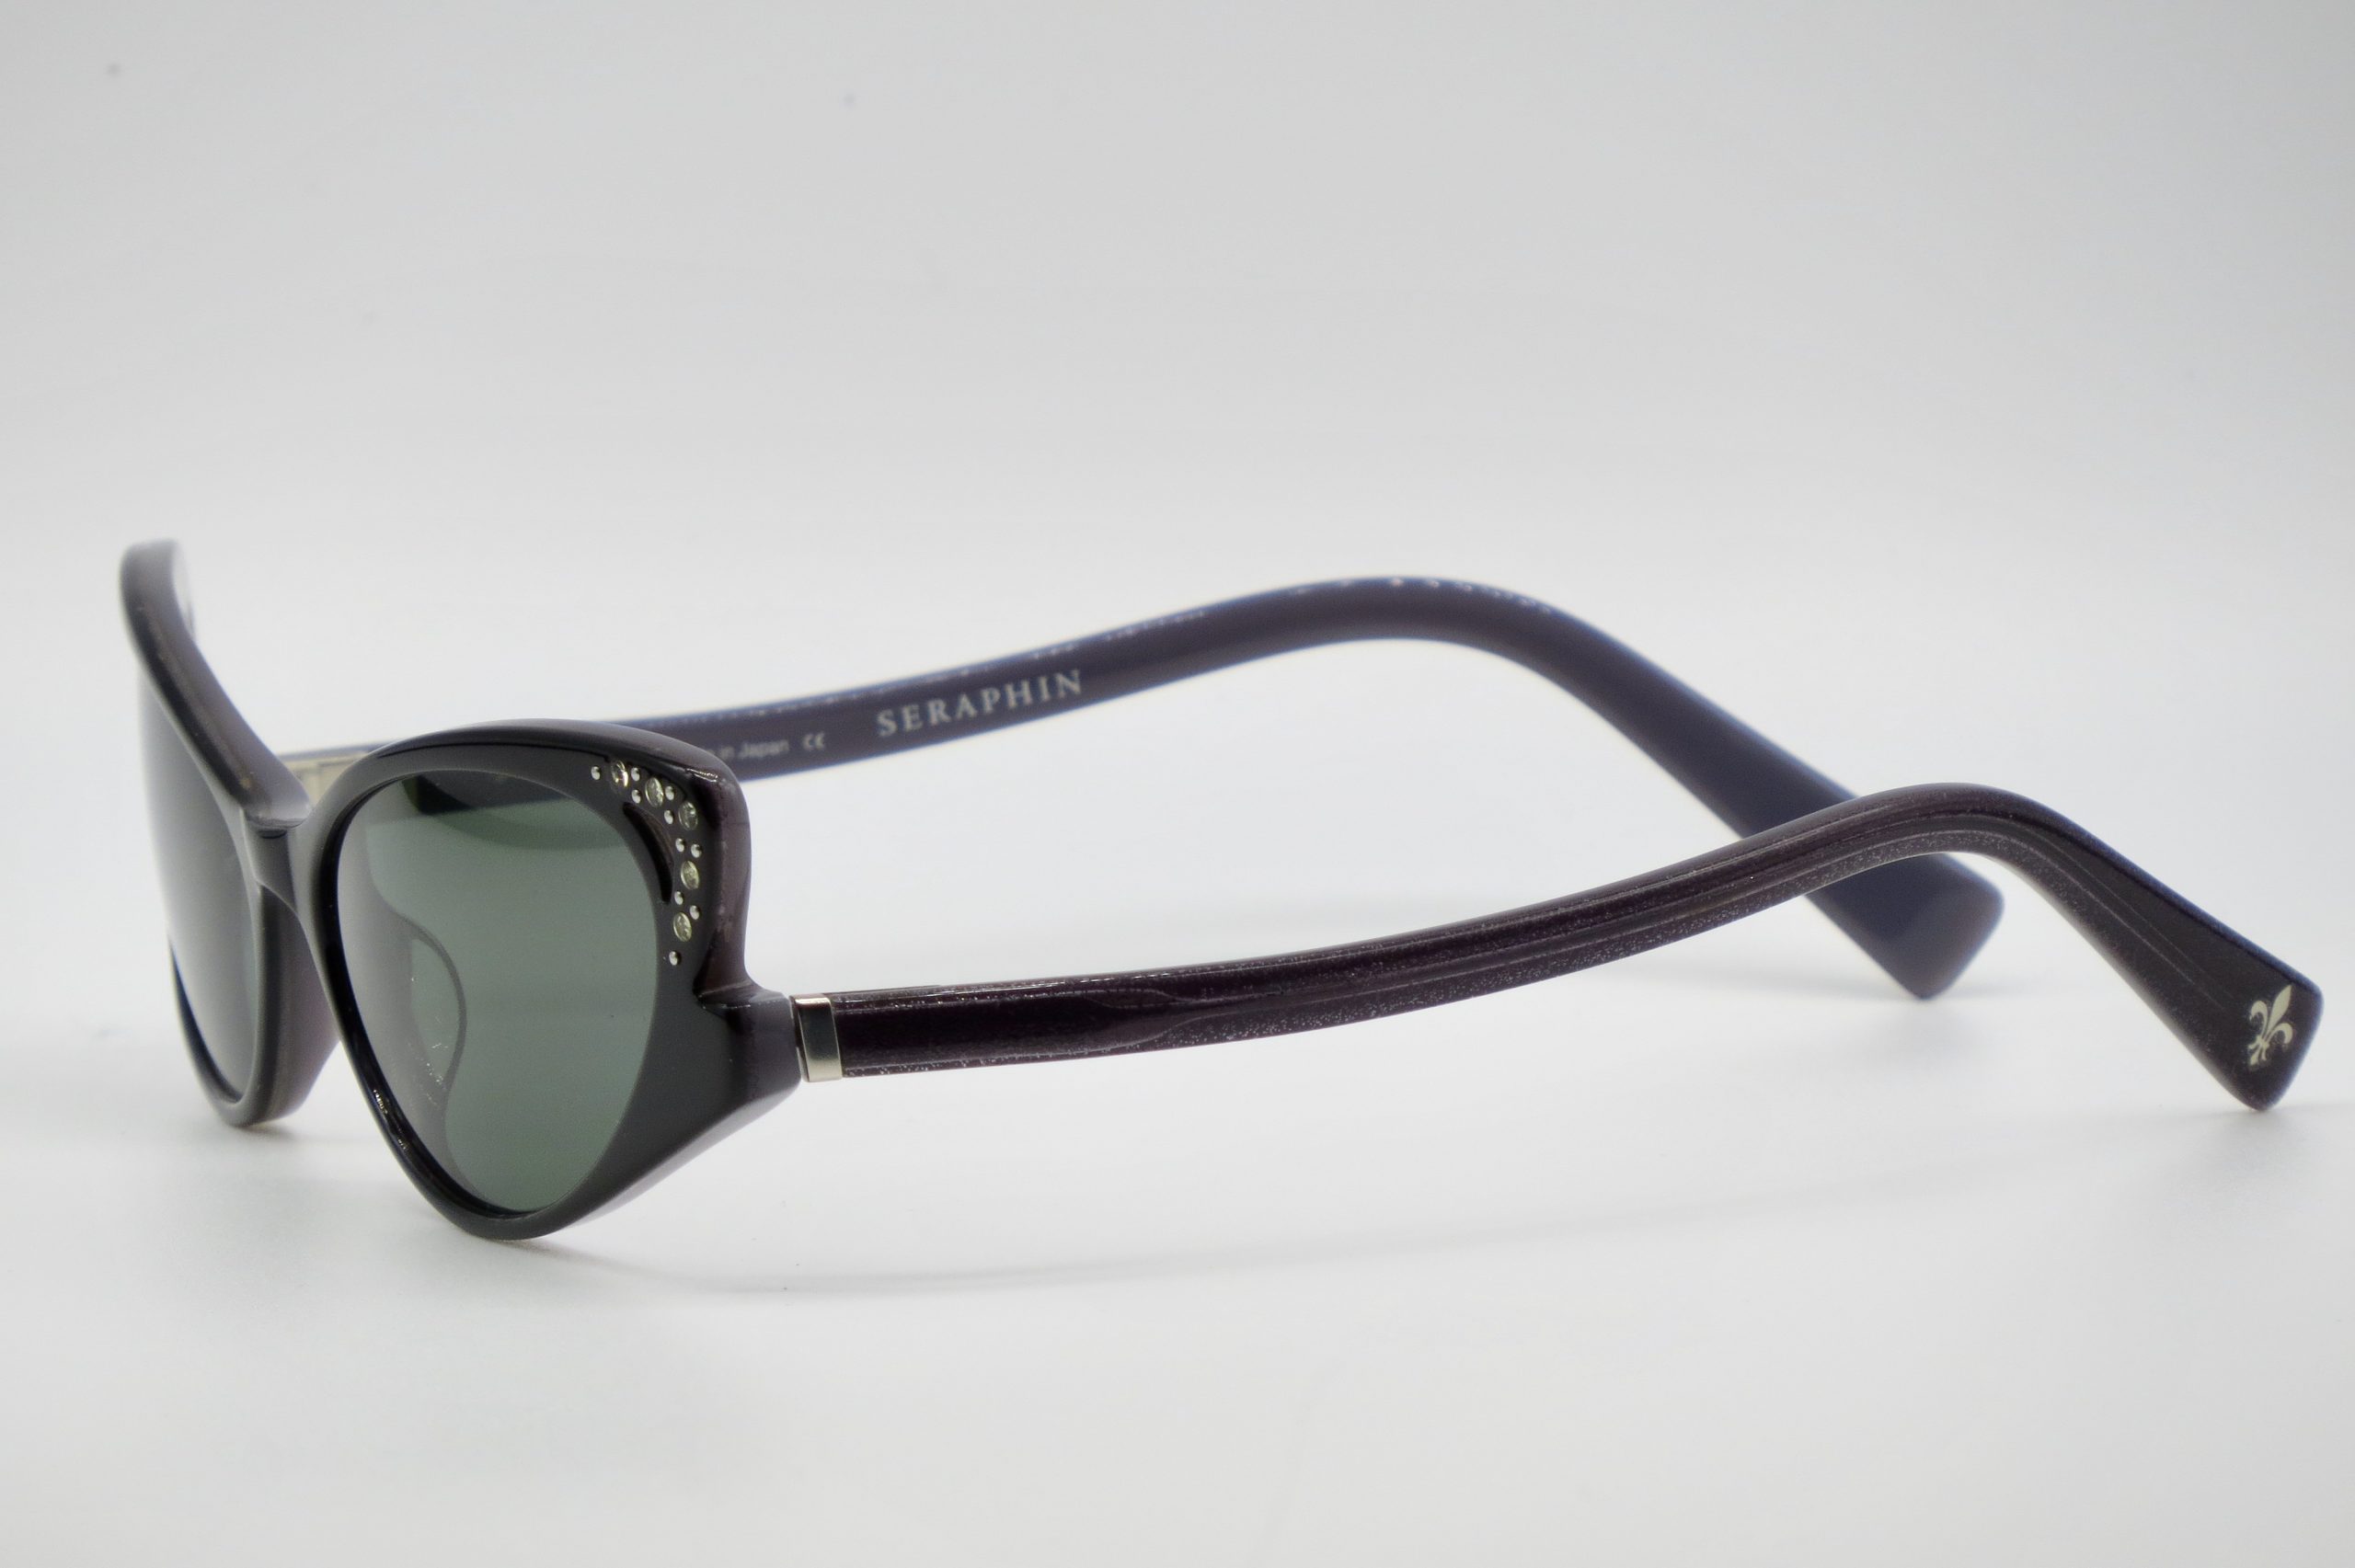 Seraphin Eyeglasses Hunter/8523 Black Rectangular Frame Japan 54-18 145  Handmade | eBay